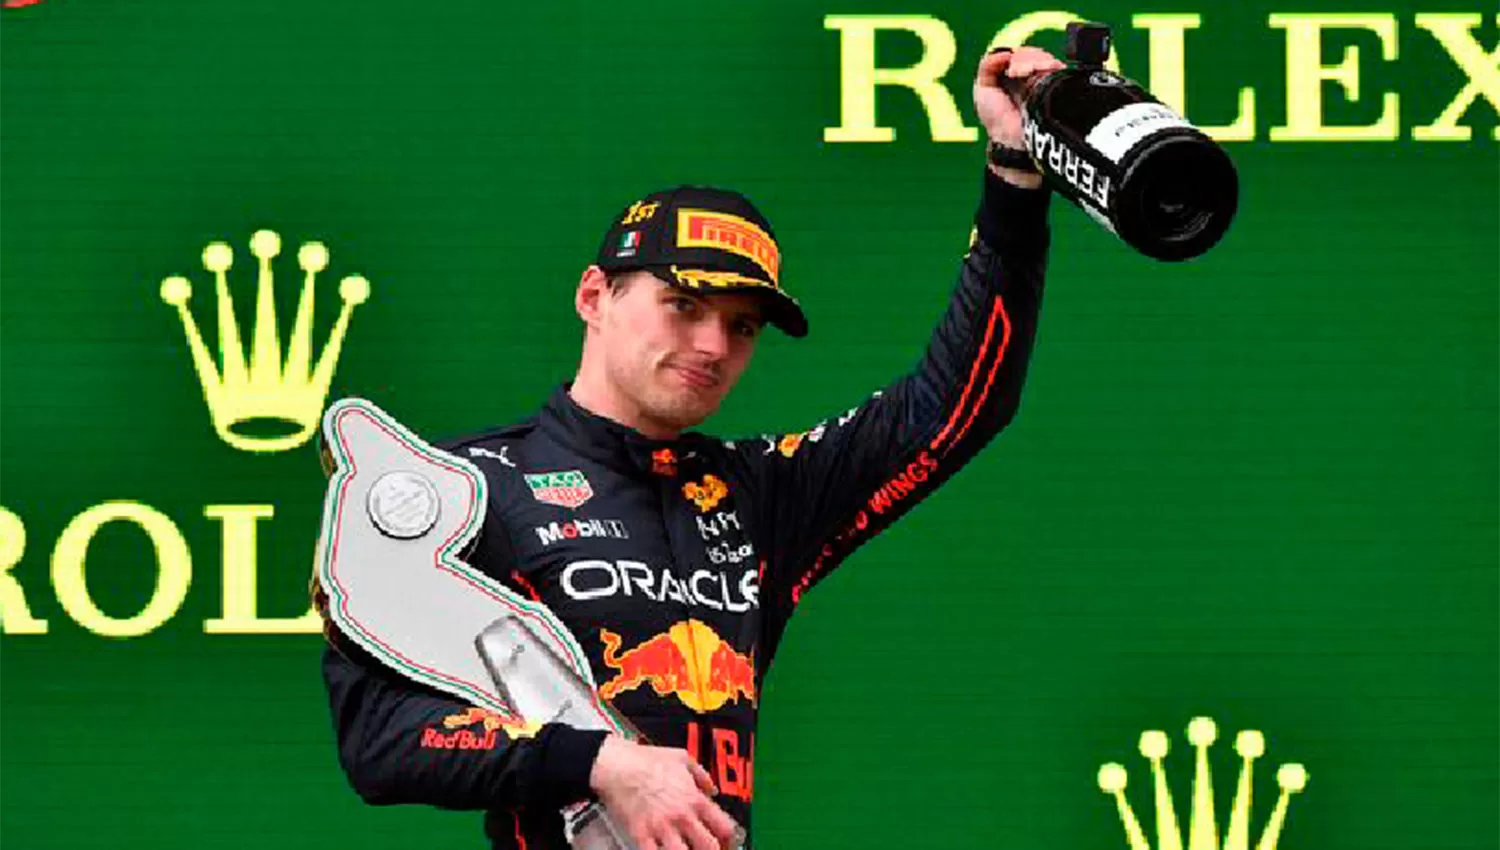 RECUPERACIÓN. Max Verstappen quedó a 27 puntos del líder del campeonato Charles Leclerc.